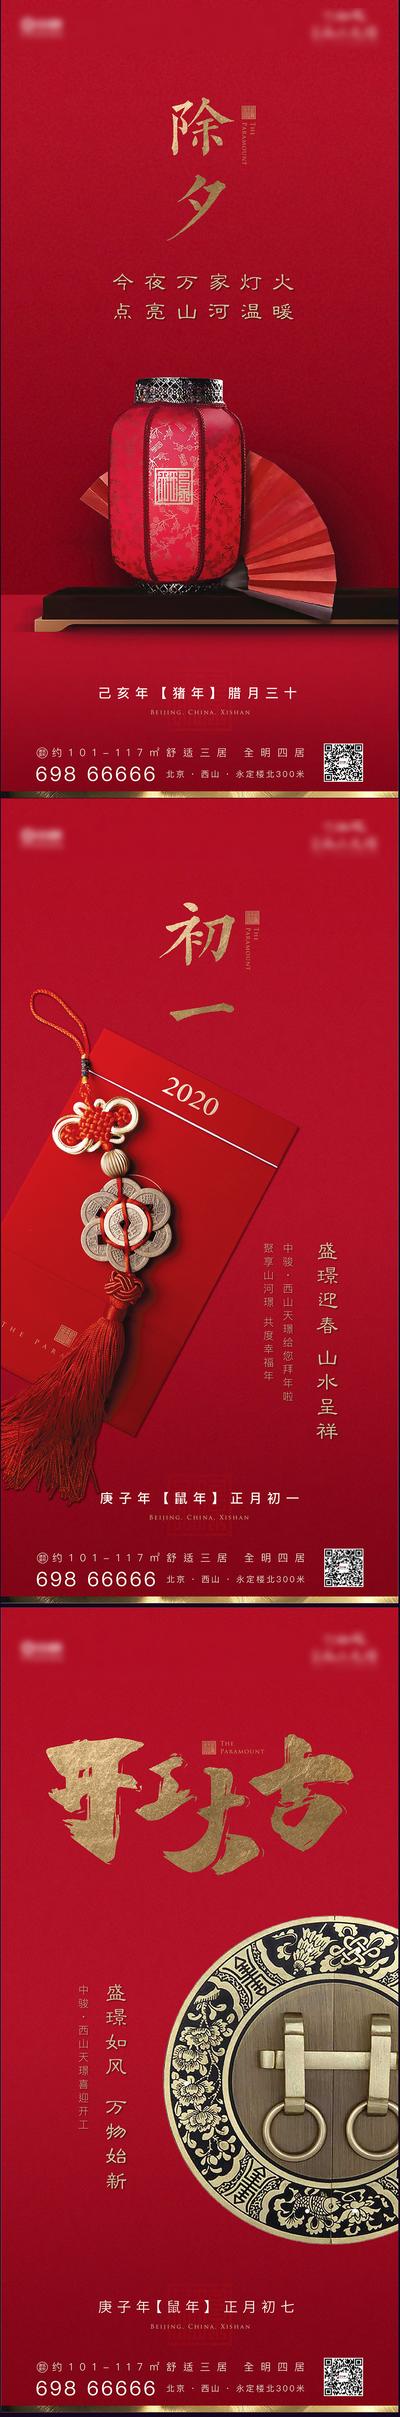 南门网 海报 房地产 中国传统节日 春节 除夕 开工大吉 灯笼 红包